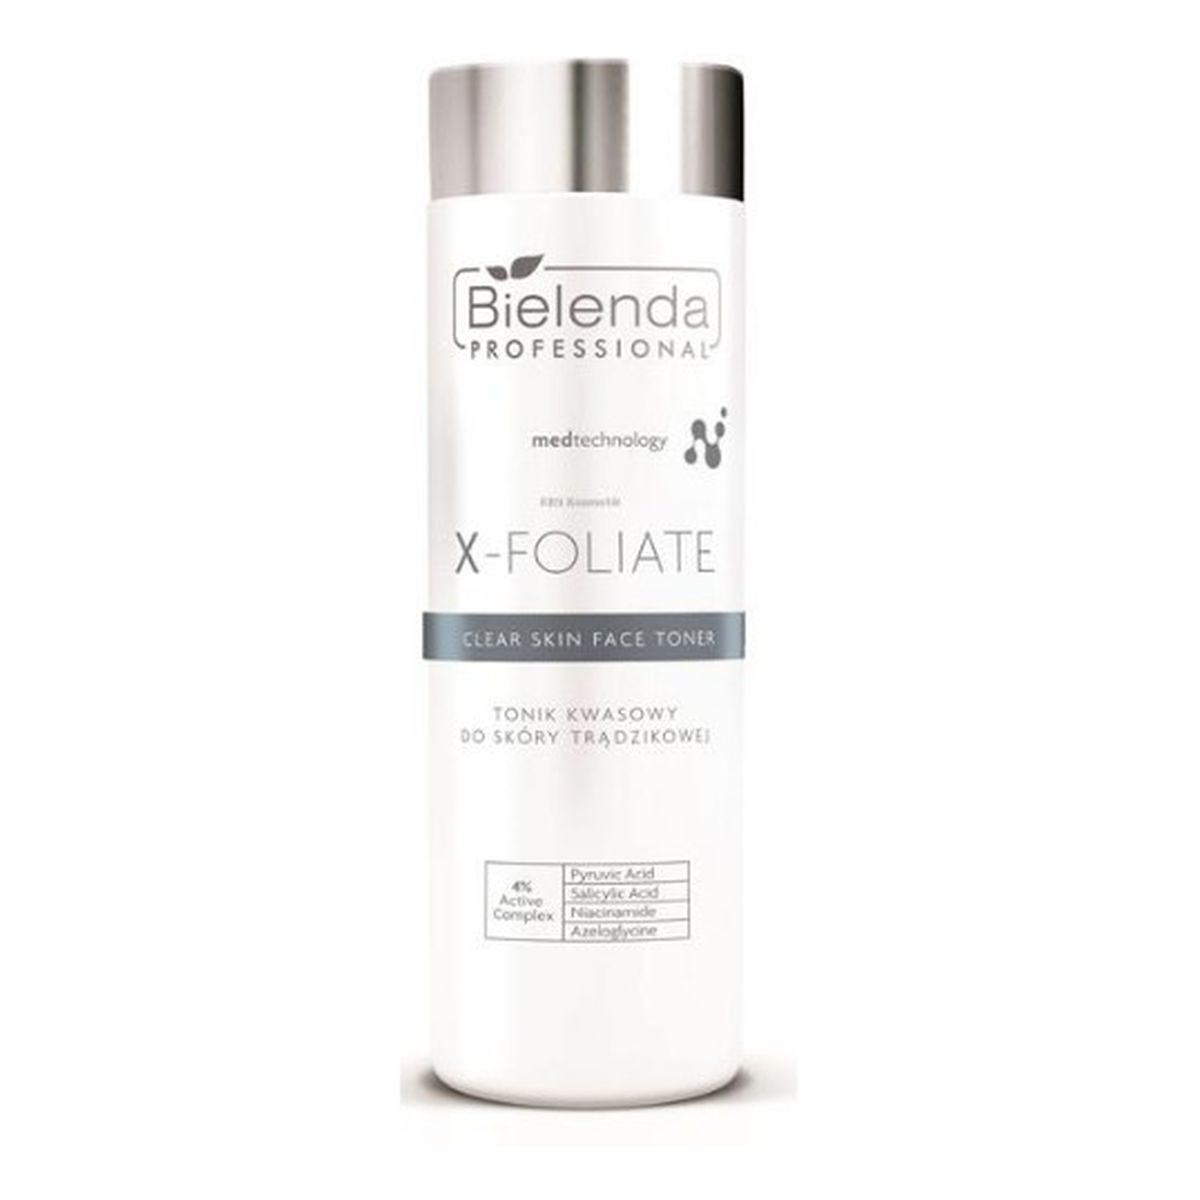 Bielenda Professional X- FOLIATE Clear Skin Tonik kwasowy do skóry trądzikowej 200ml